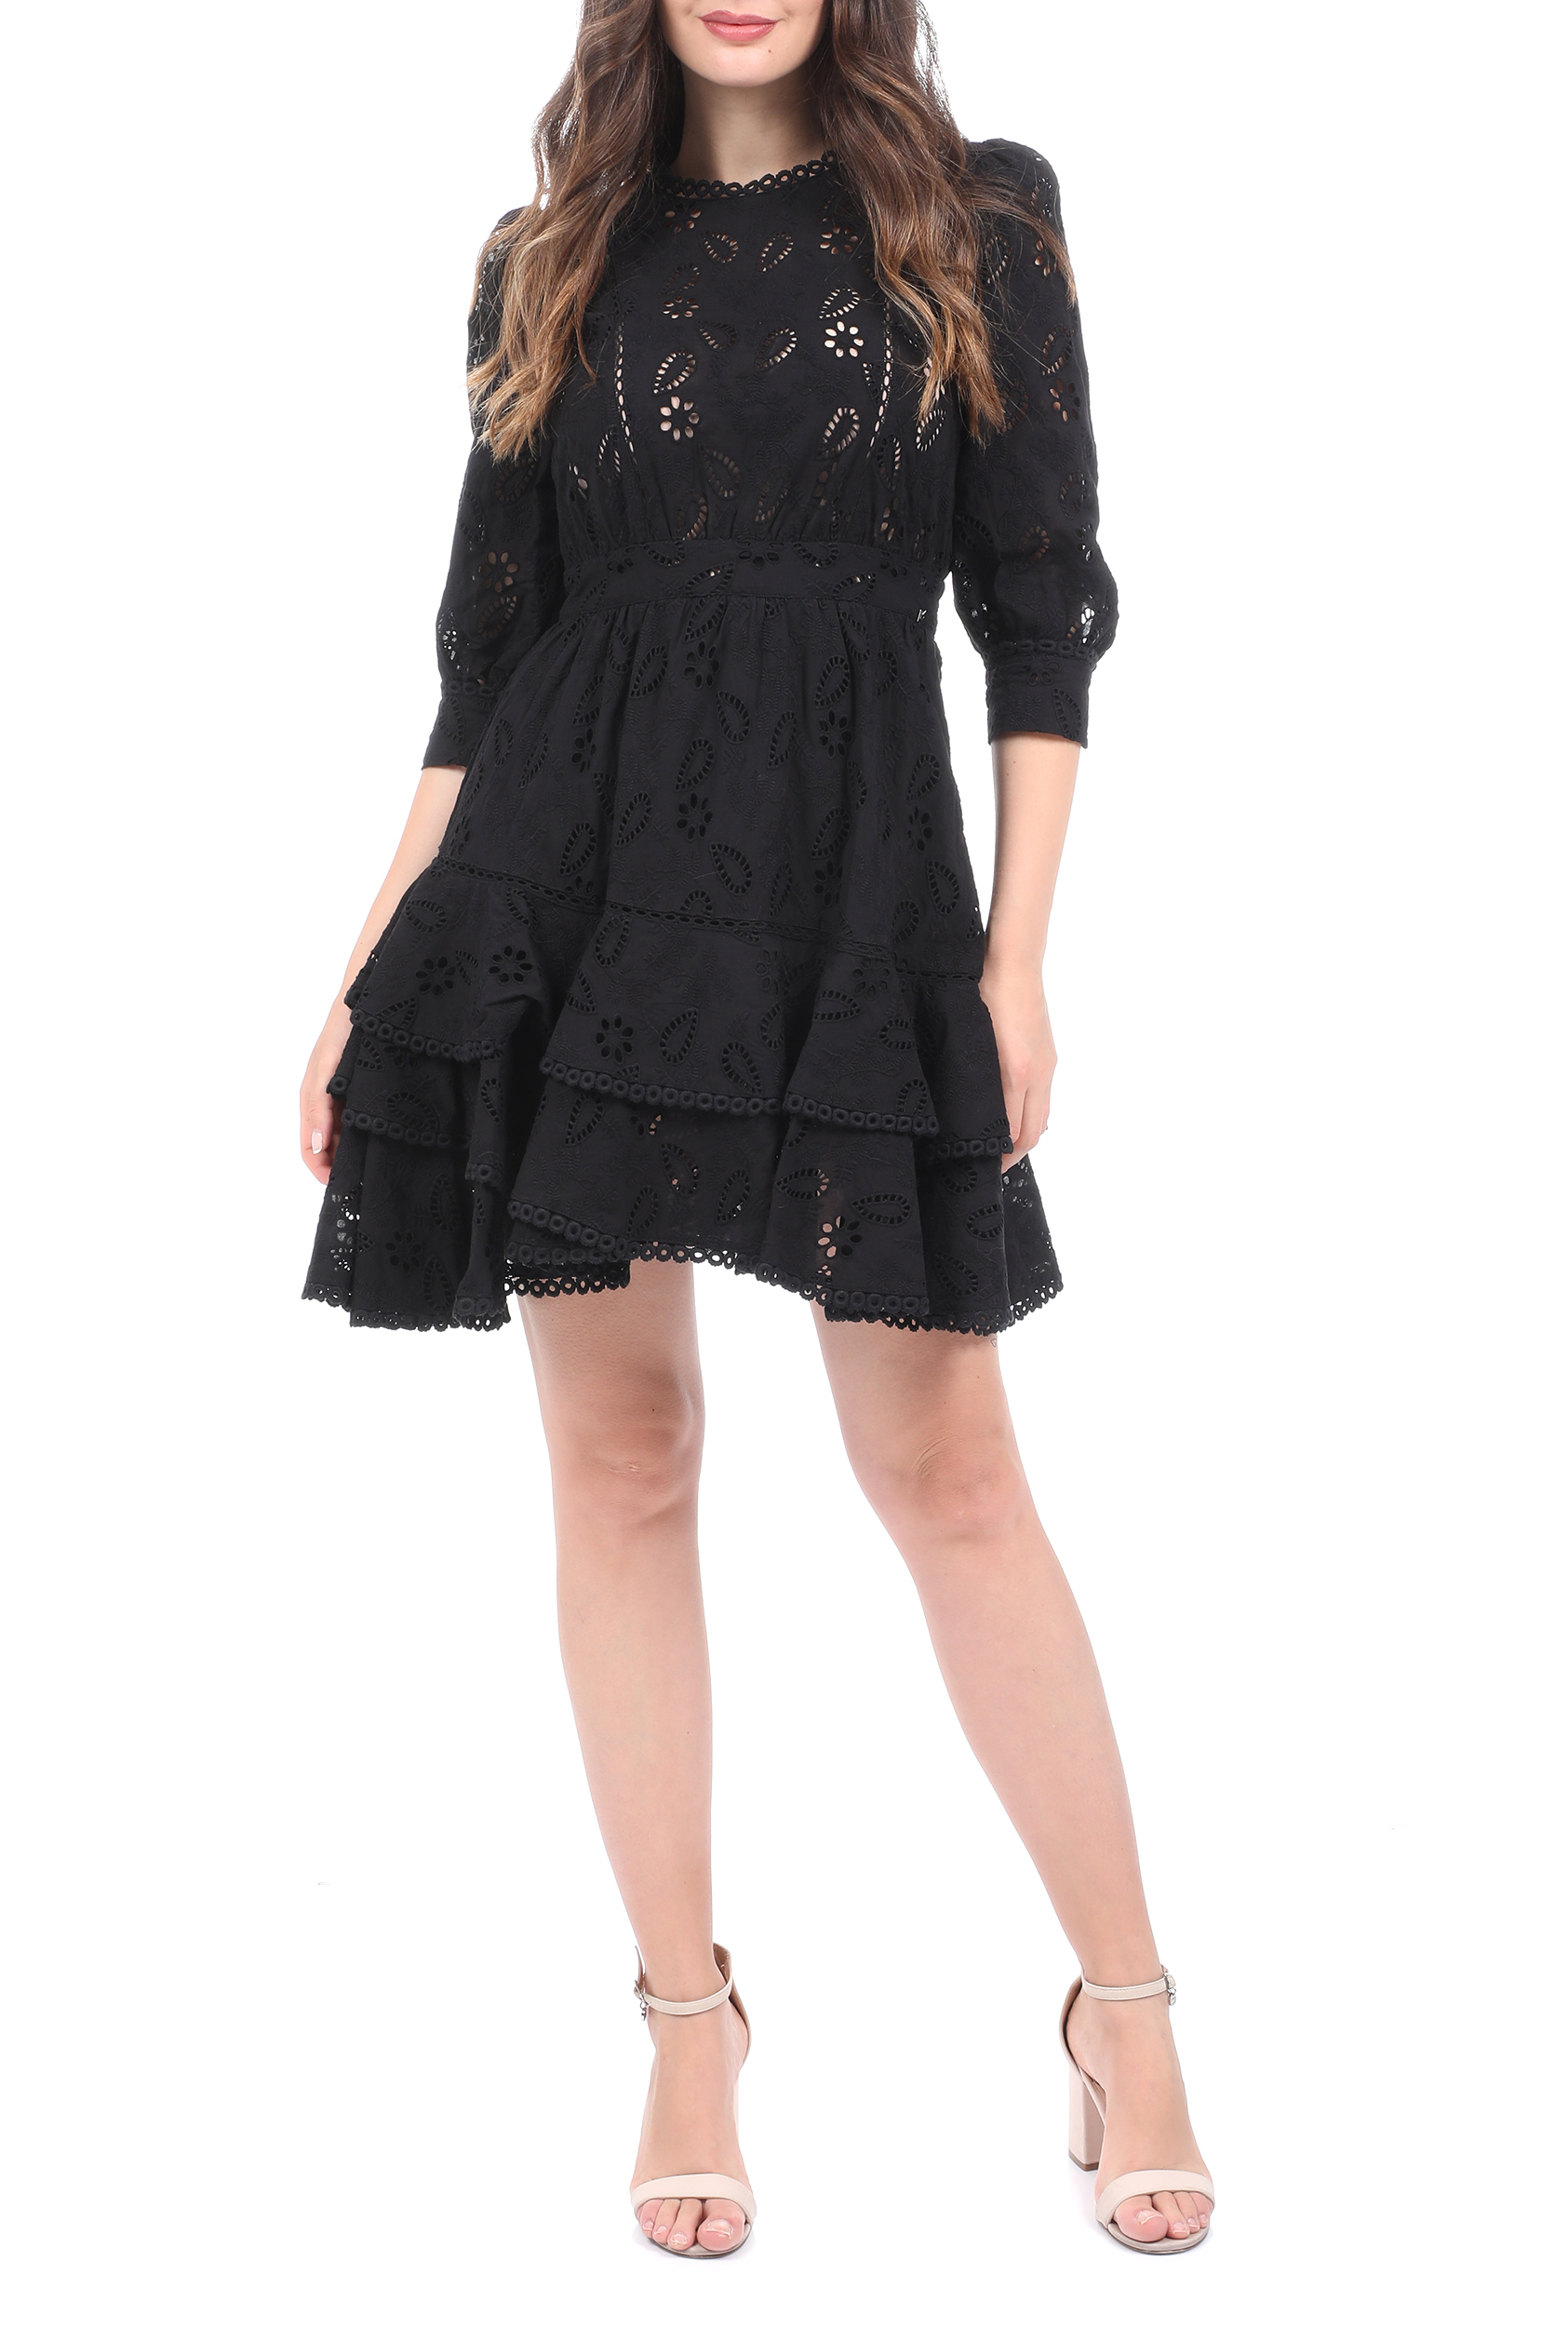 Γυναικεία/Ρούχα/Φόρεματα/Μίνι KOCCA - Γυνακείο mini φόρεμα KOCCA TEJAL μαύρο